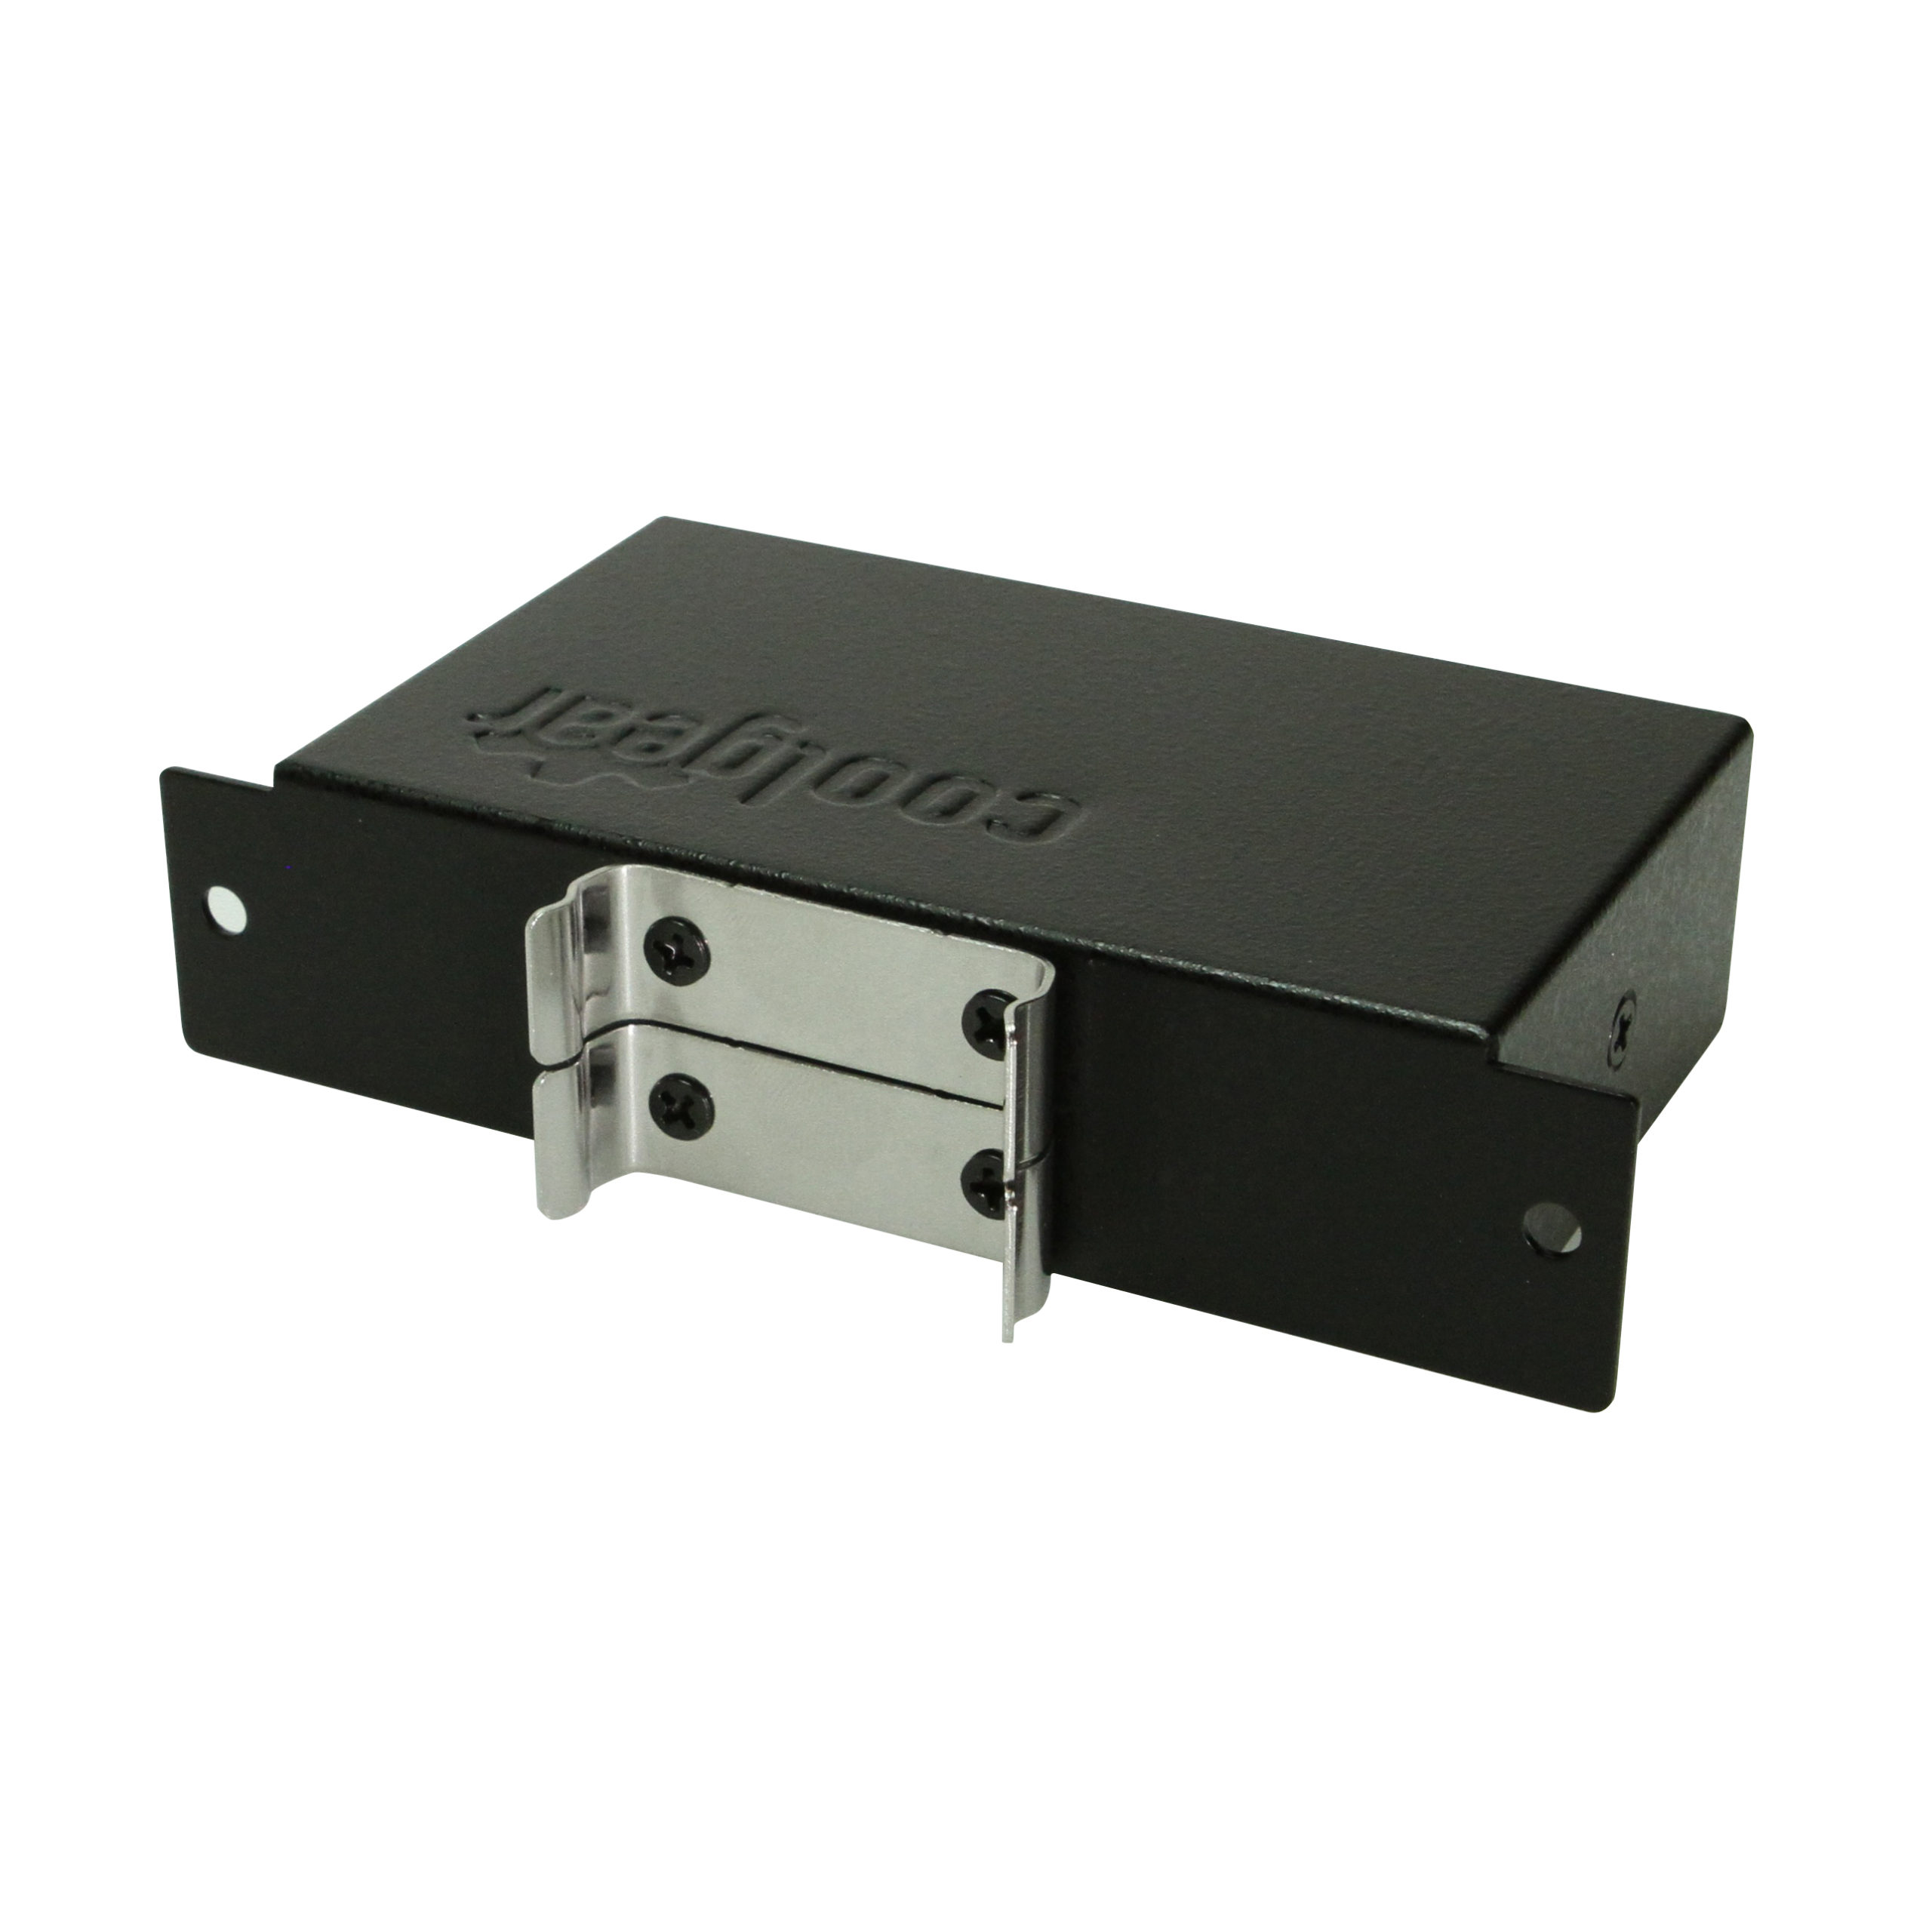 Hub Teraware conector usb a 4 puertos usb 2.0, negro - Coolbox